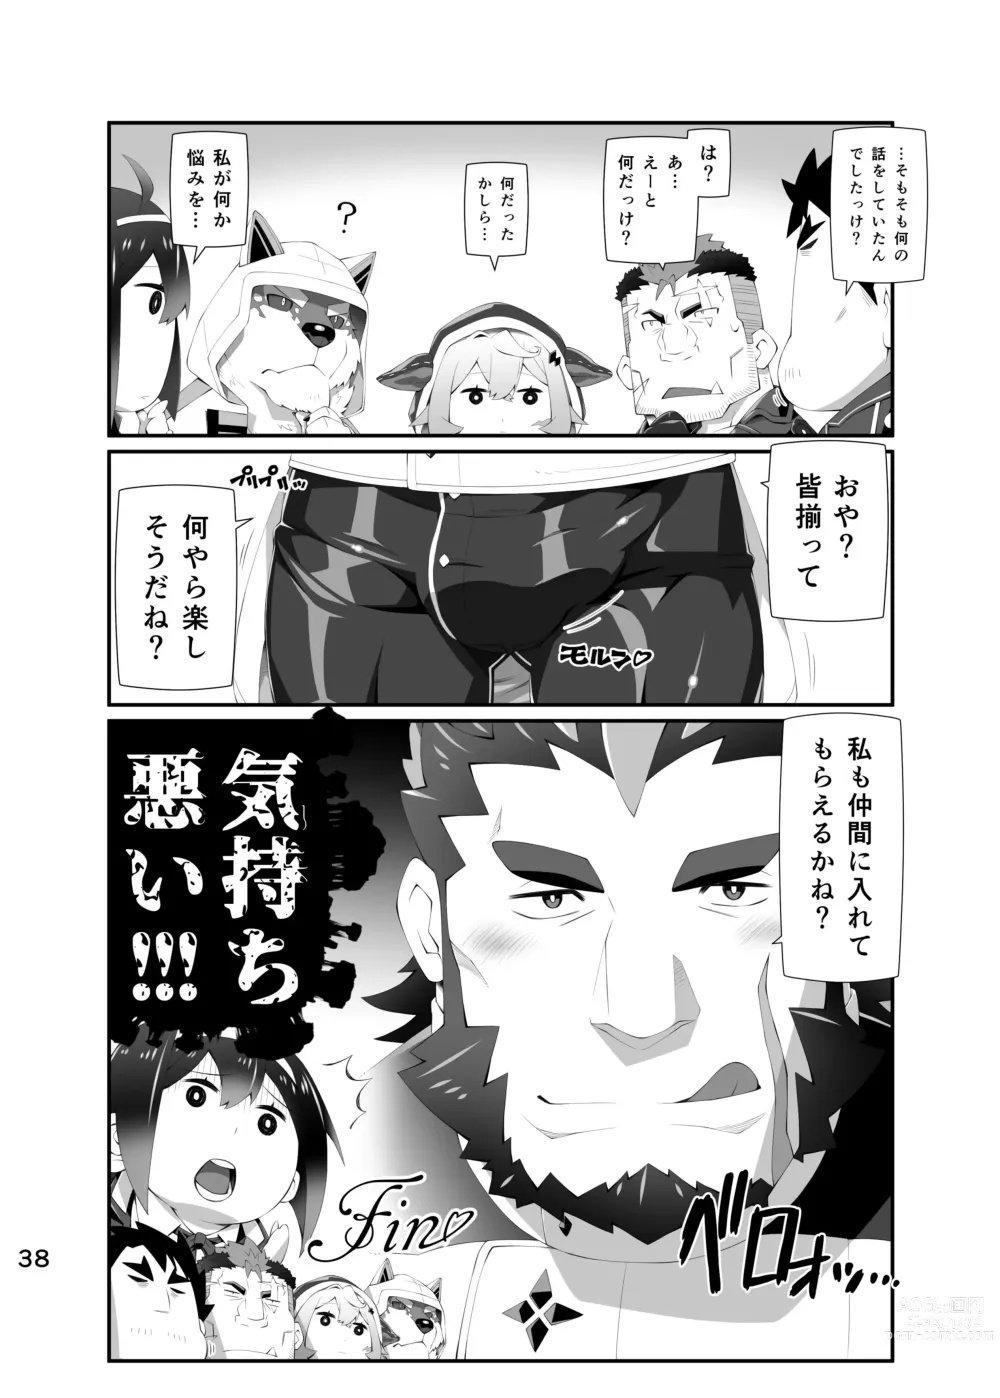 Page 37 of doujinshi LIVE AH ERO